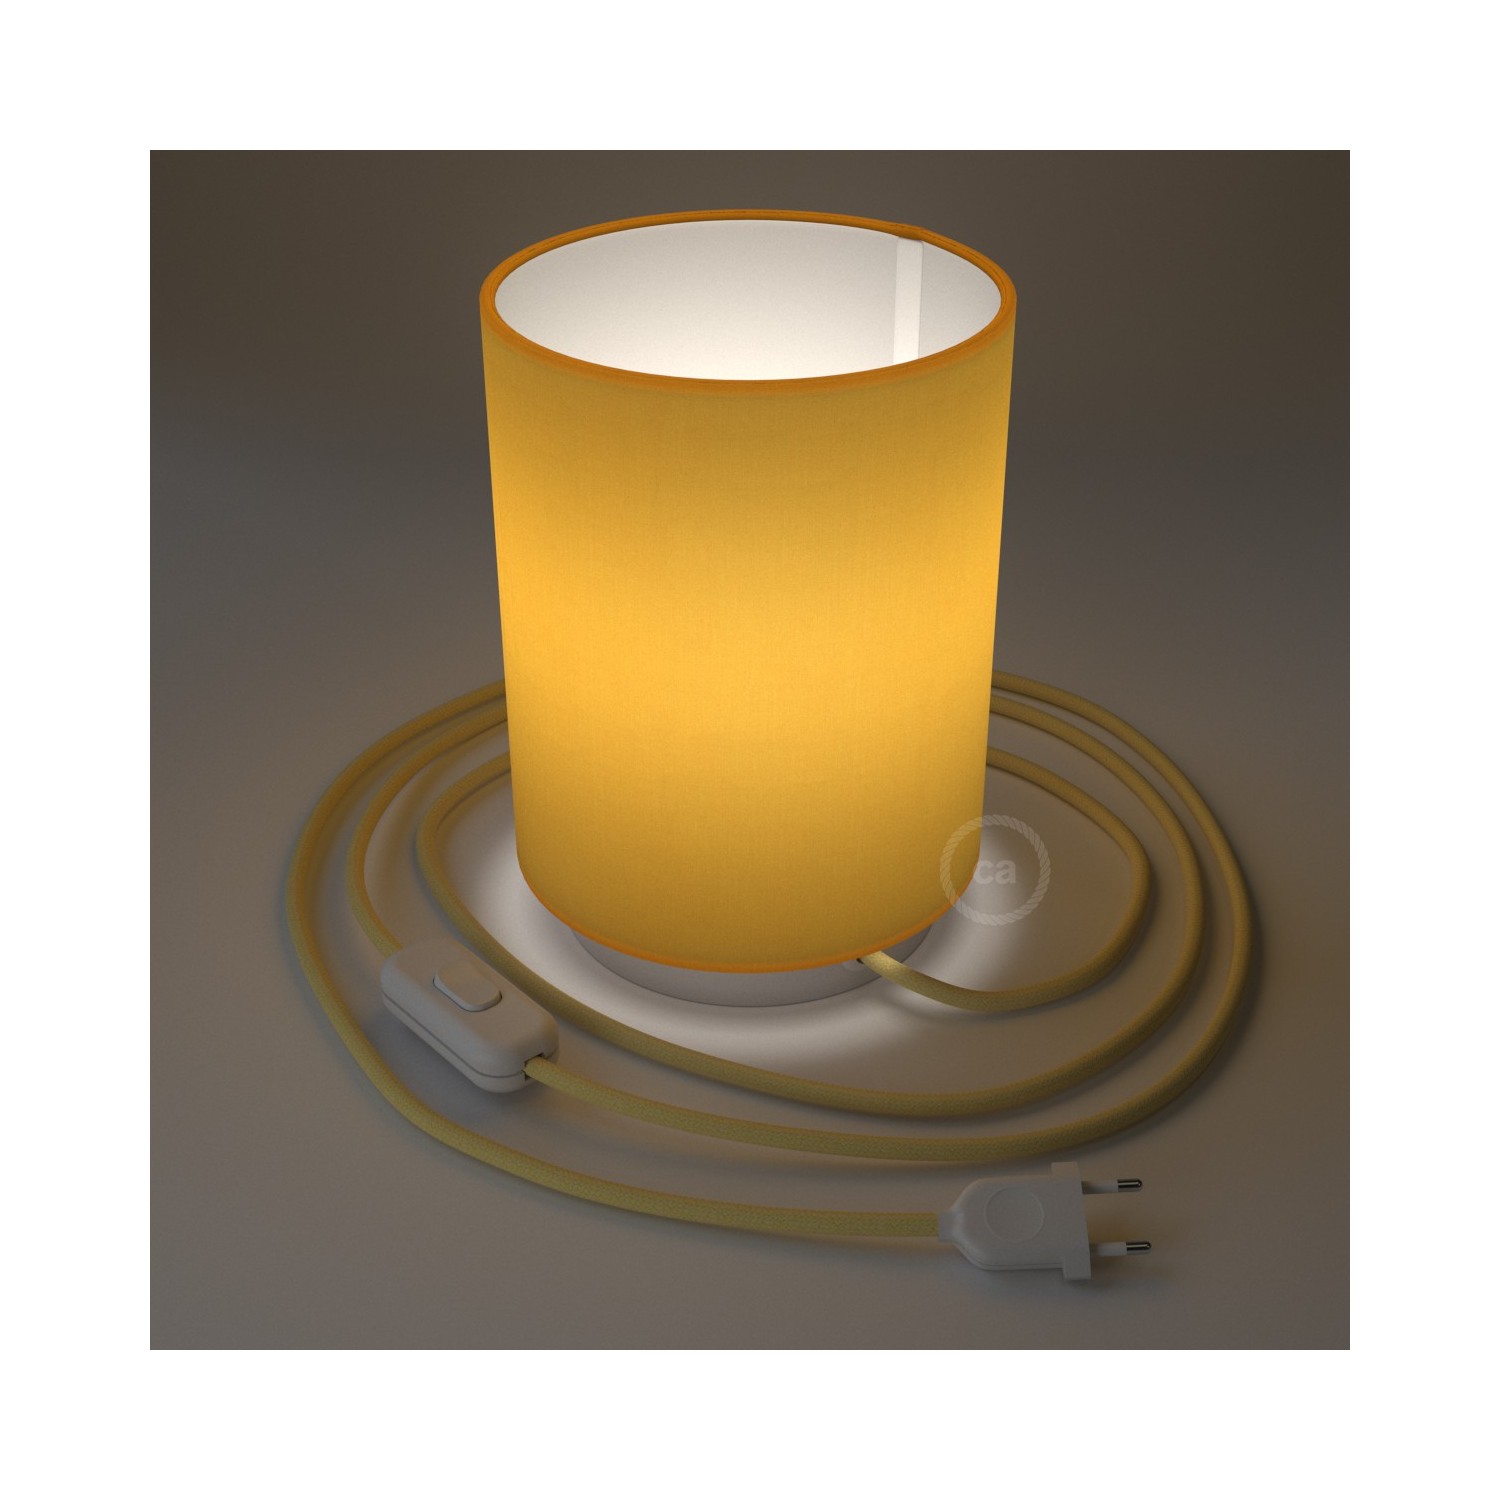 Metall Posaluce mit leuchtend gelbem Lampenschirm Cilindro, komplett mit Textilkabel, Schalter und 2-poligem Stecker